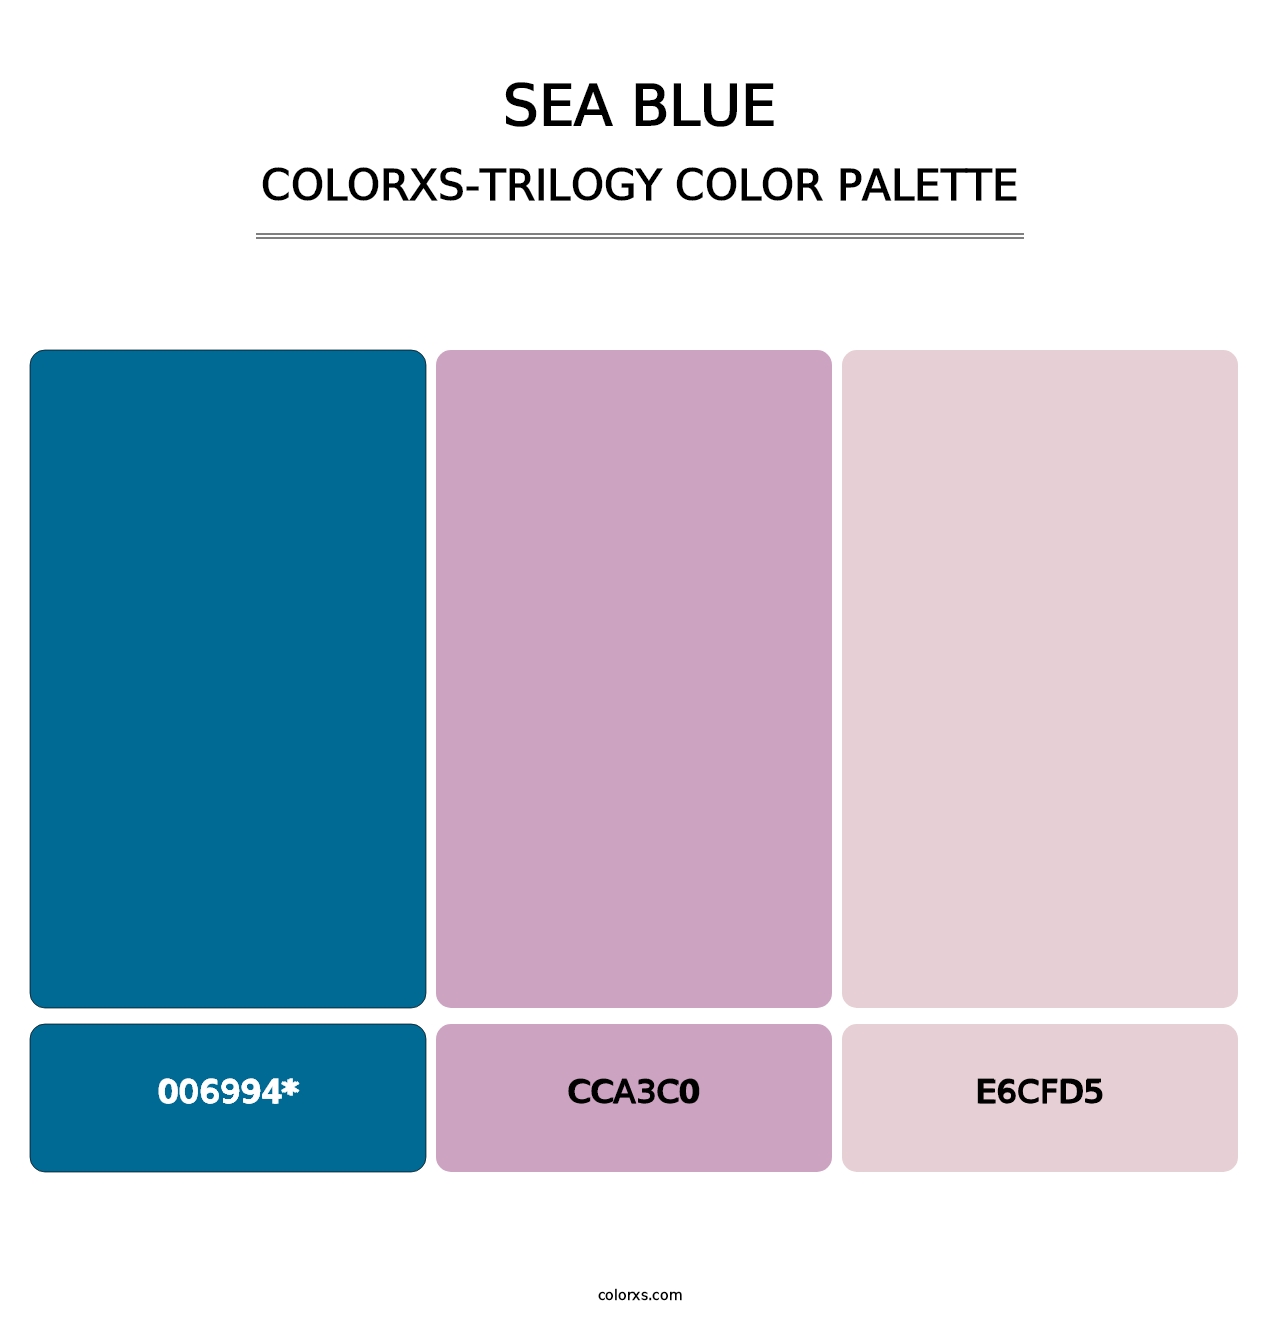 Sea Blue - Colorxs Trilogy Palette